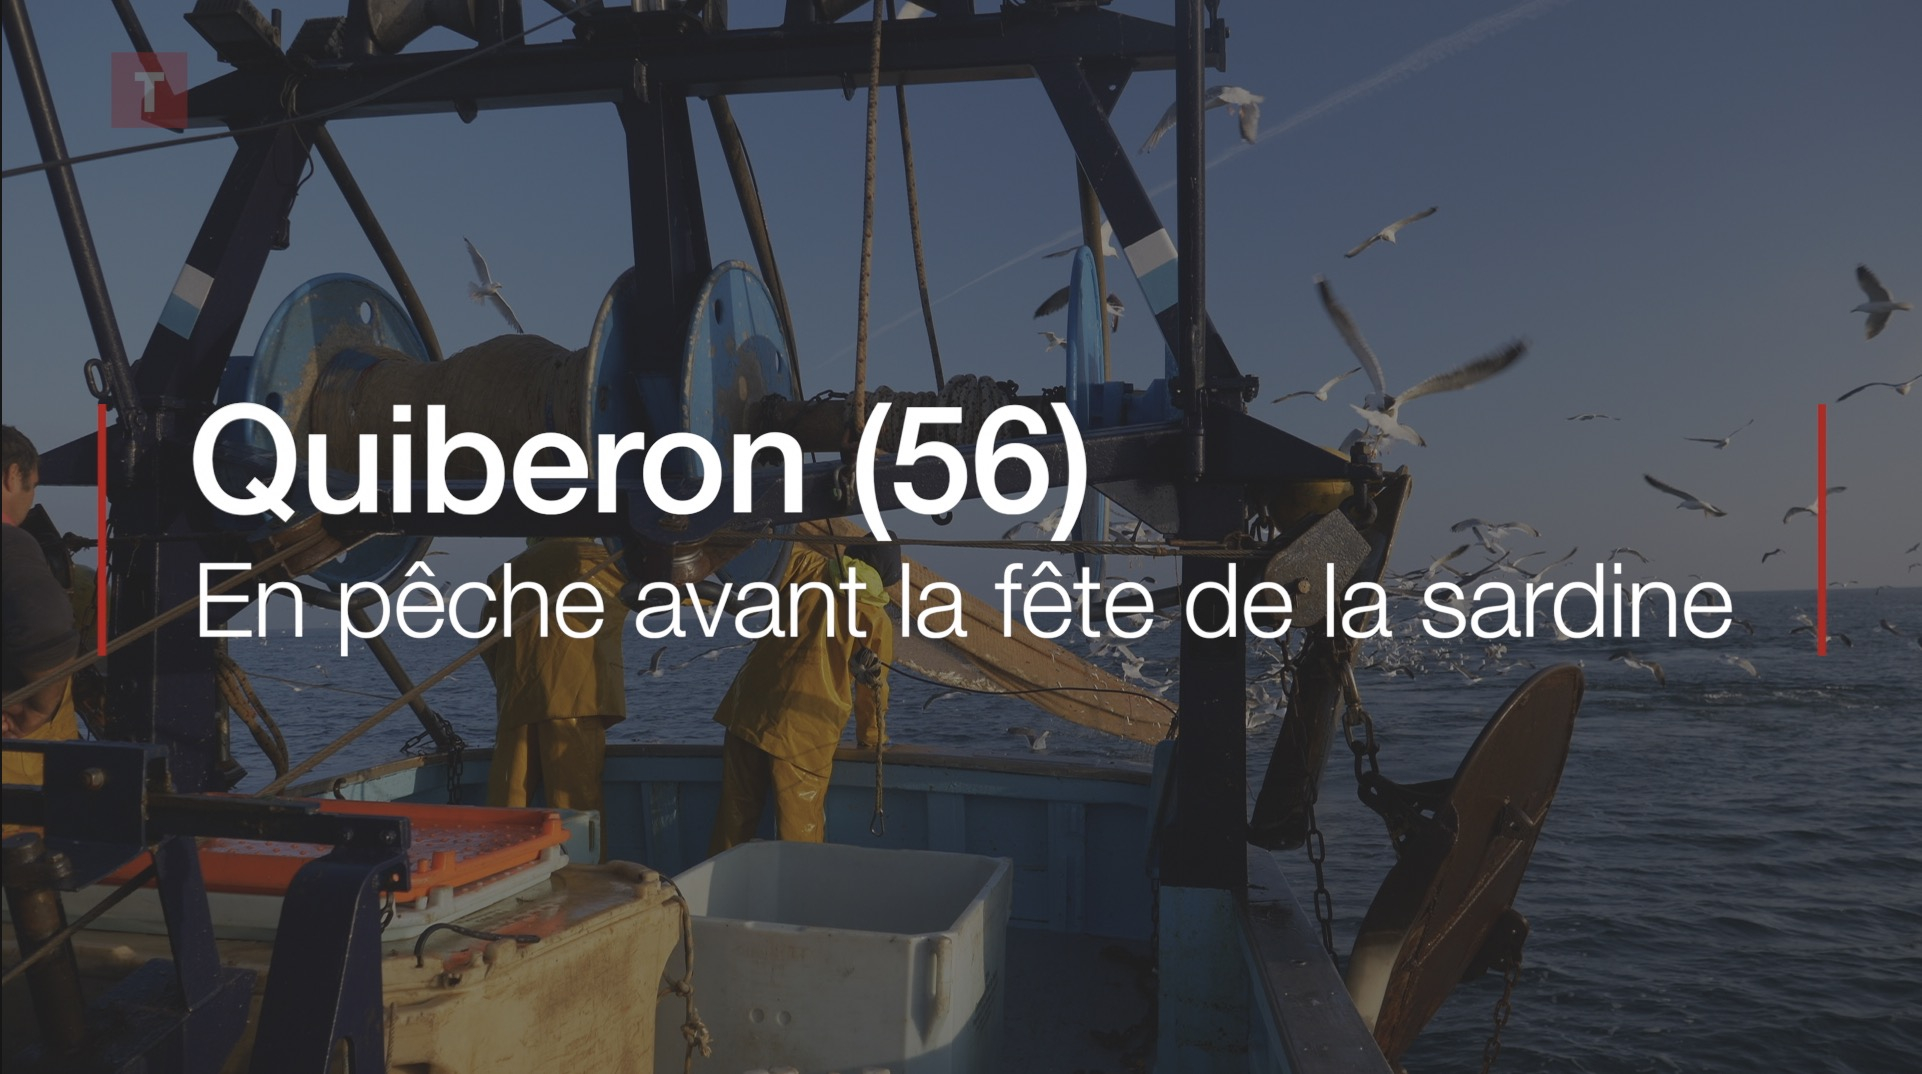 Suivez les pêcheurs de sardine à l'occasion de la fête à la sardine à Quiberon (Le Télégramme)